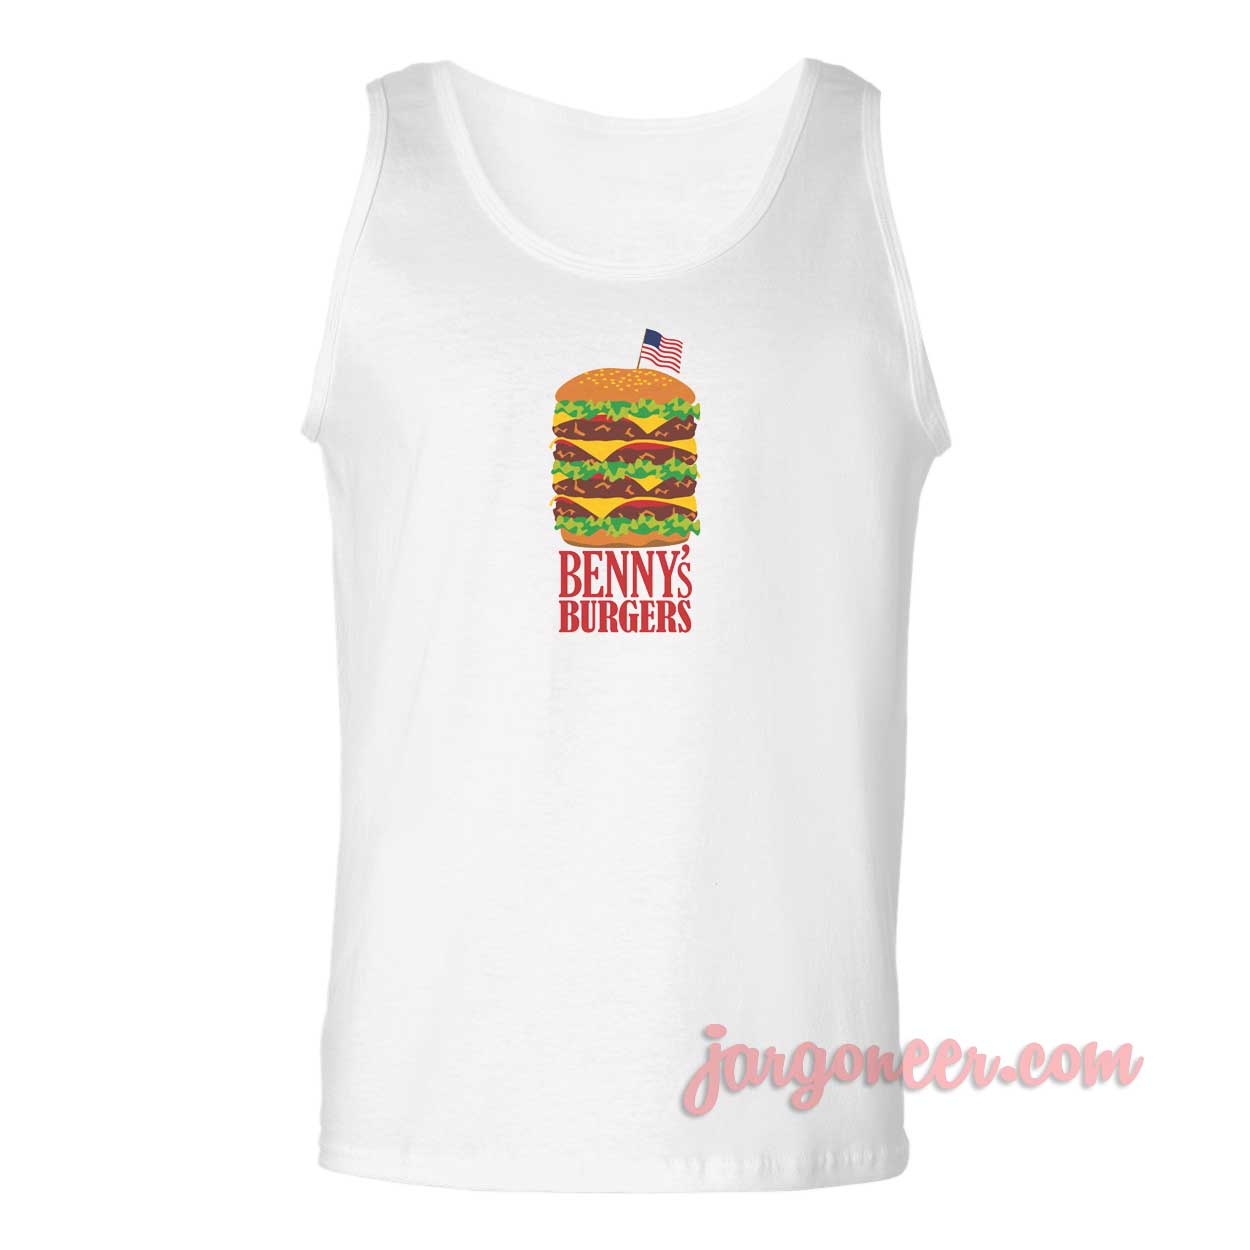 Bennys Burger Stranger Things - Shop Unique Graphic Cool Shirt Designs